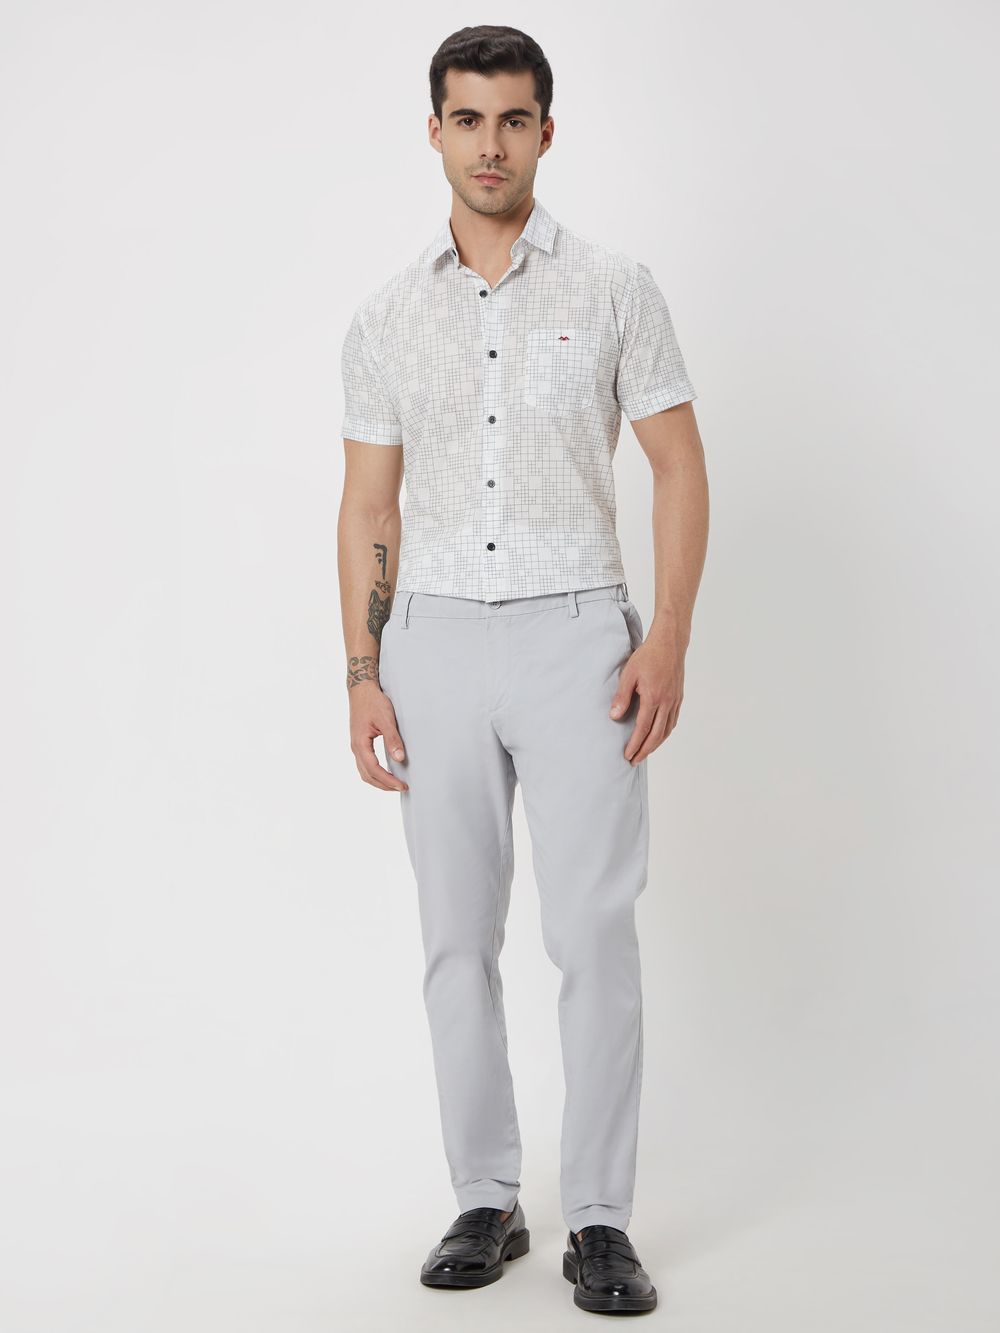 White & Black Grid Check Slim Fit Casual Shirt